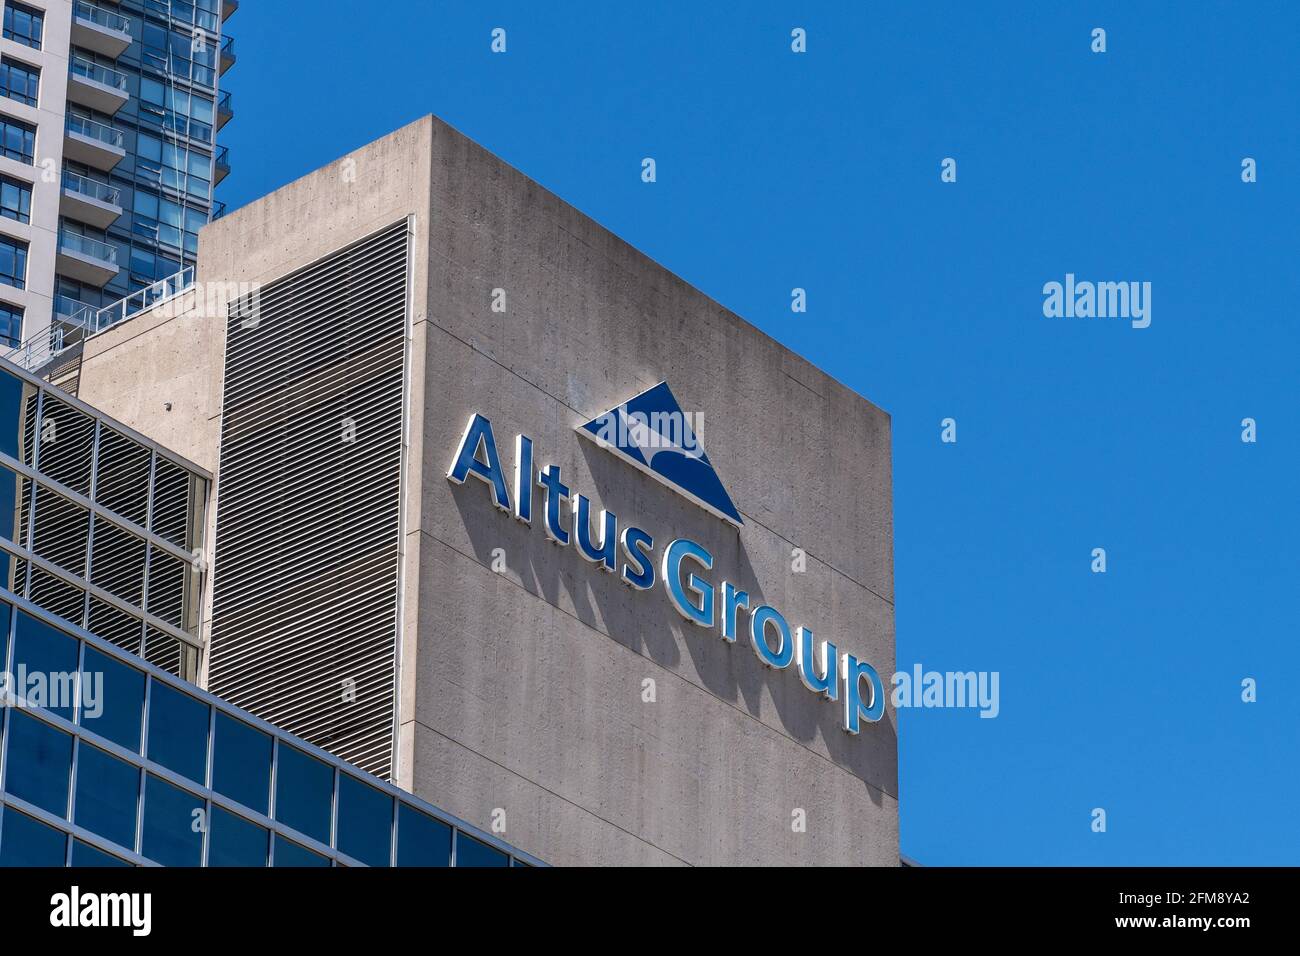 Altus Group Limited signe ou logo dans un immeuble du centre-ville de Toronto, Canada. La société propose des solutions logicielles et de données. Banque D'Images